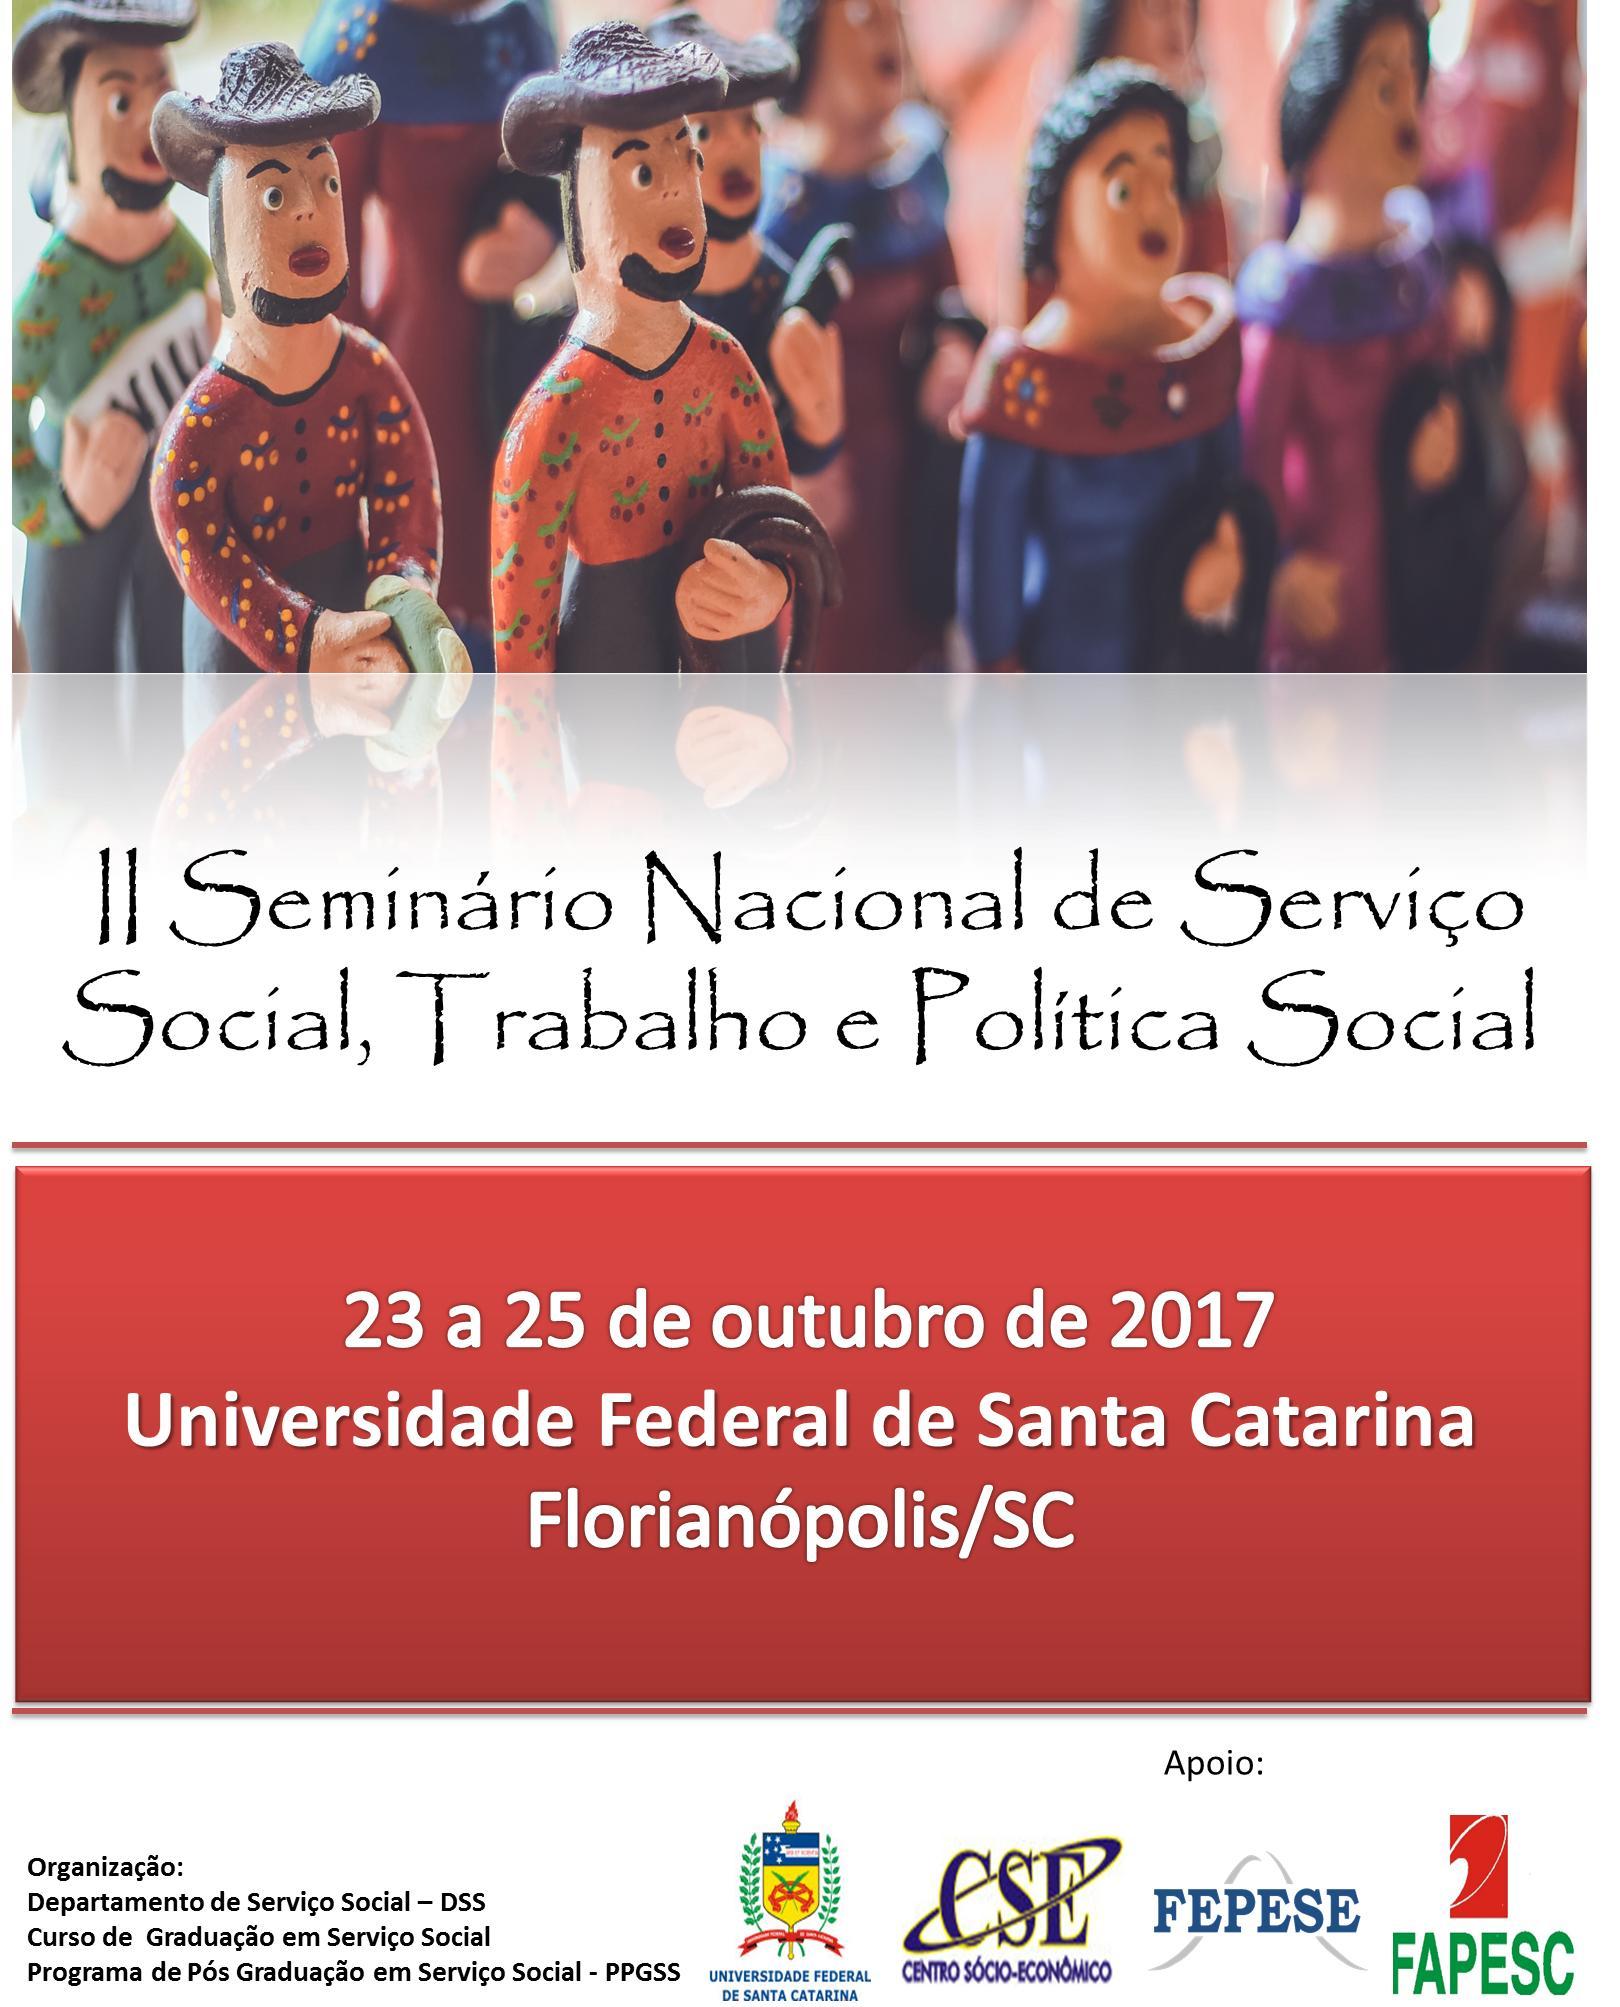 II Seminário Nacional de Serviço Social, Trabalho e Política Social